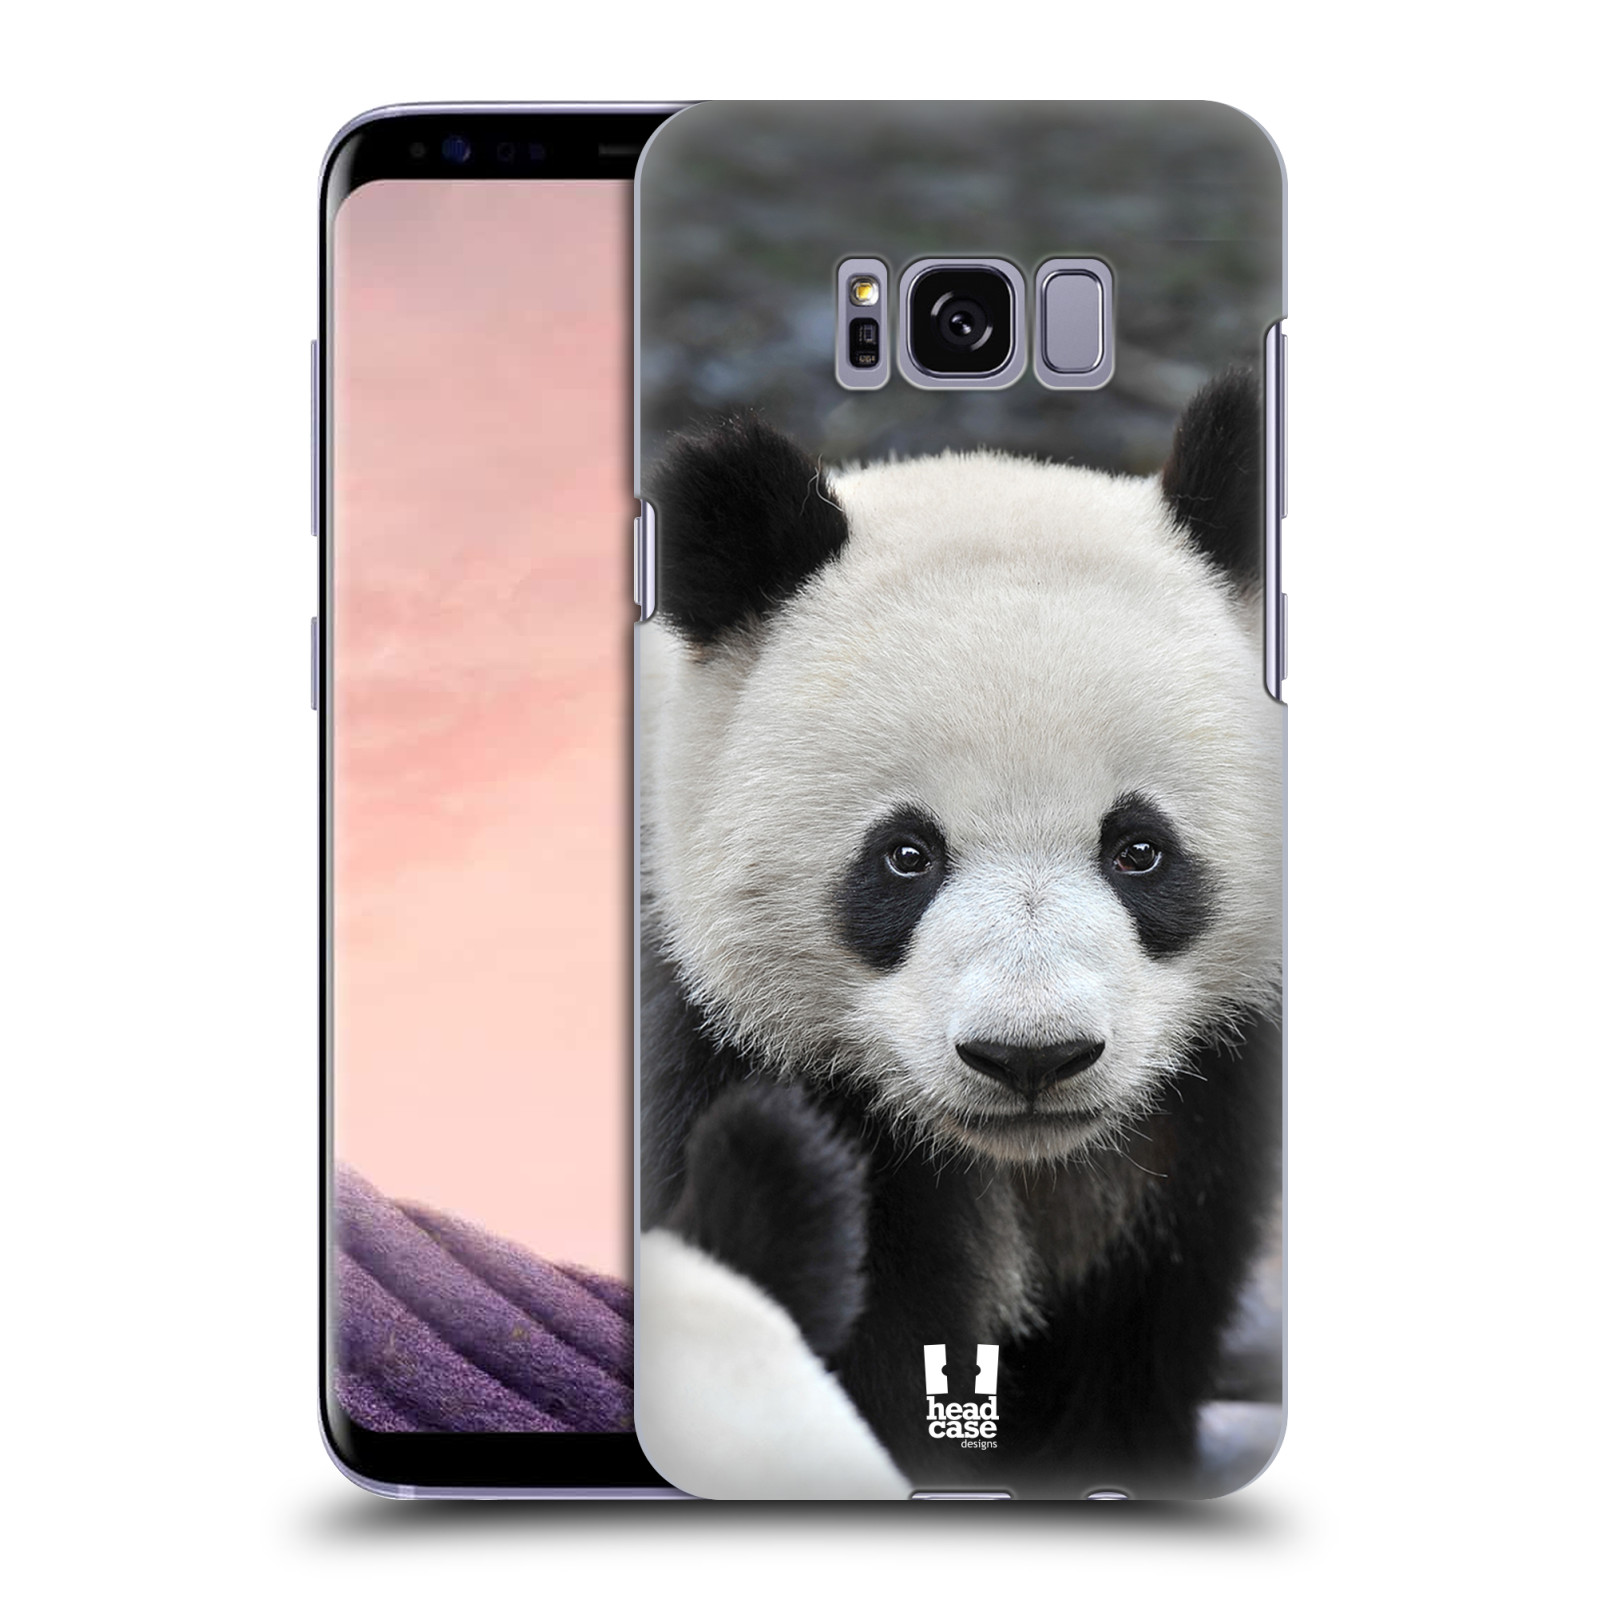 Zadní obal pro mobil Samsung Galaxy S8 - HEAD CASE - Svět zvířat medvěd panda